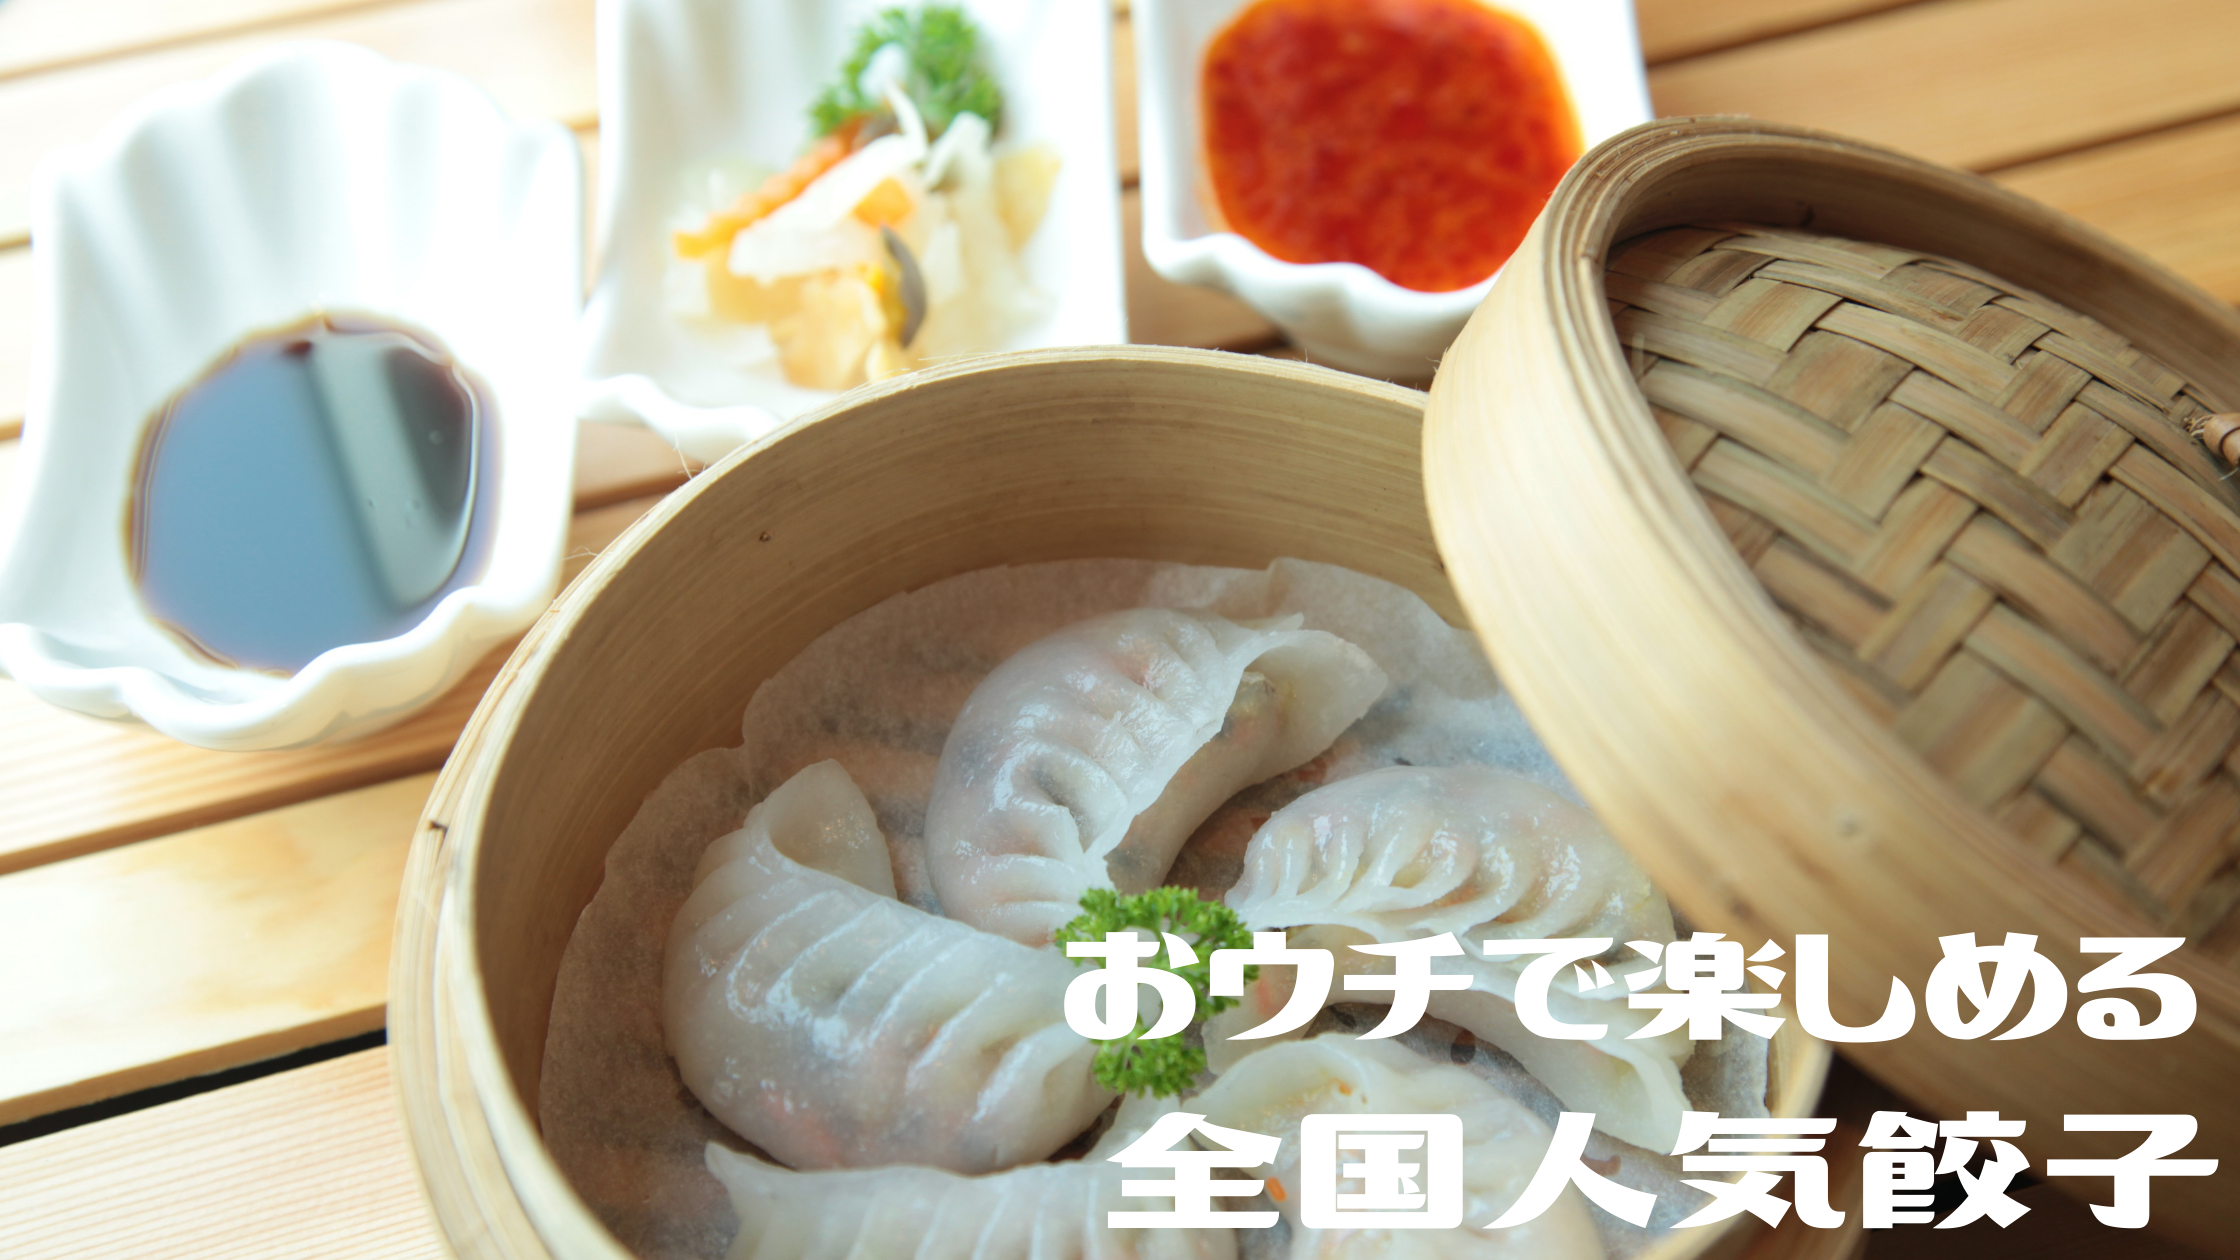 【めざましテレビ】『近江牛・進化形・肉汁たっぷり』全国人気餃子